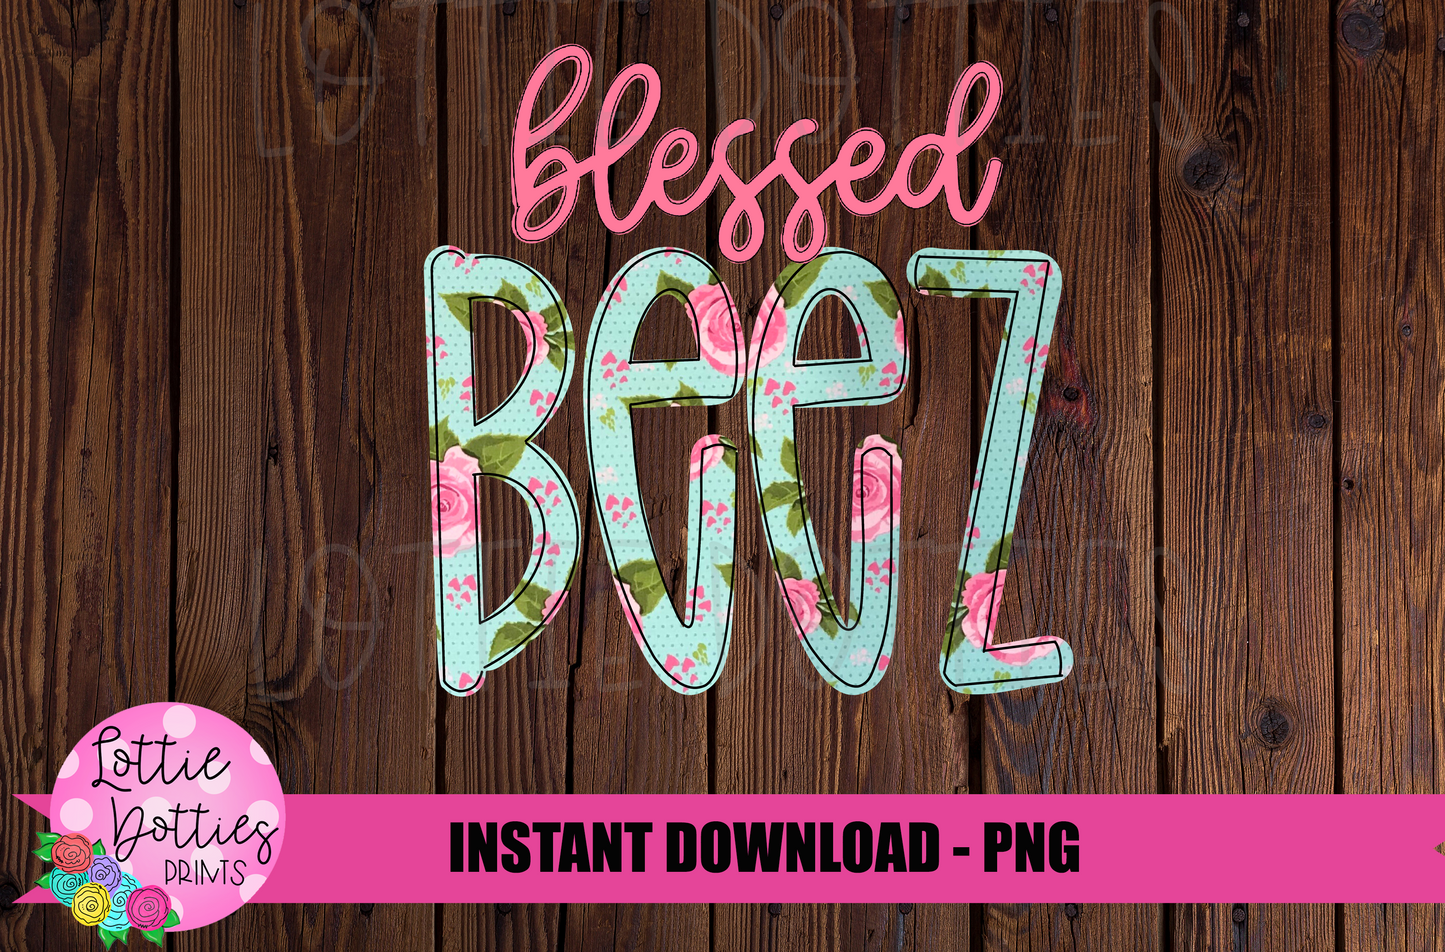 Blessed Beez Png - Sublimation File - Instant Download - Digital Download - Floral  Print